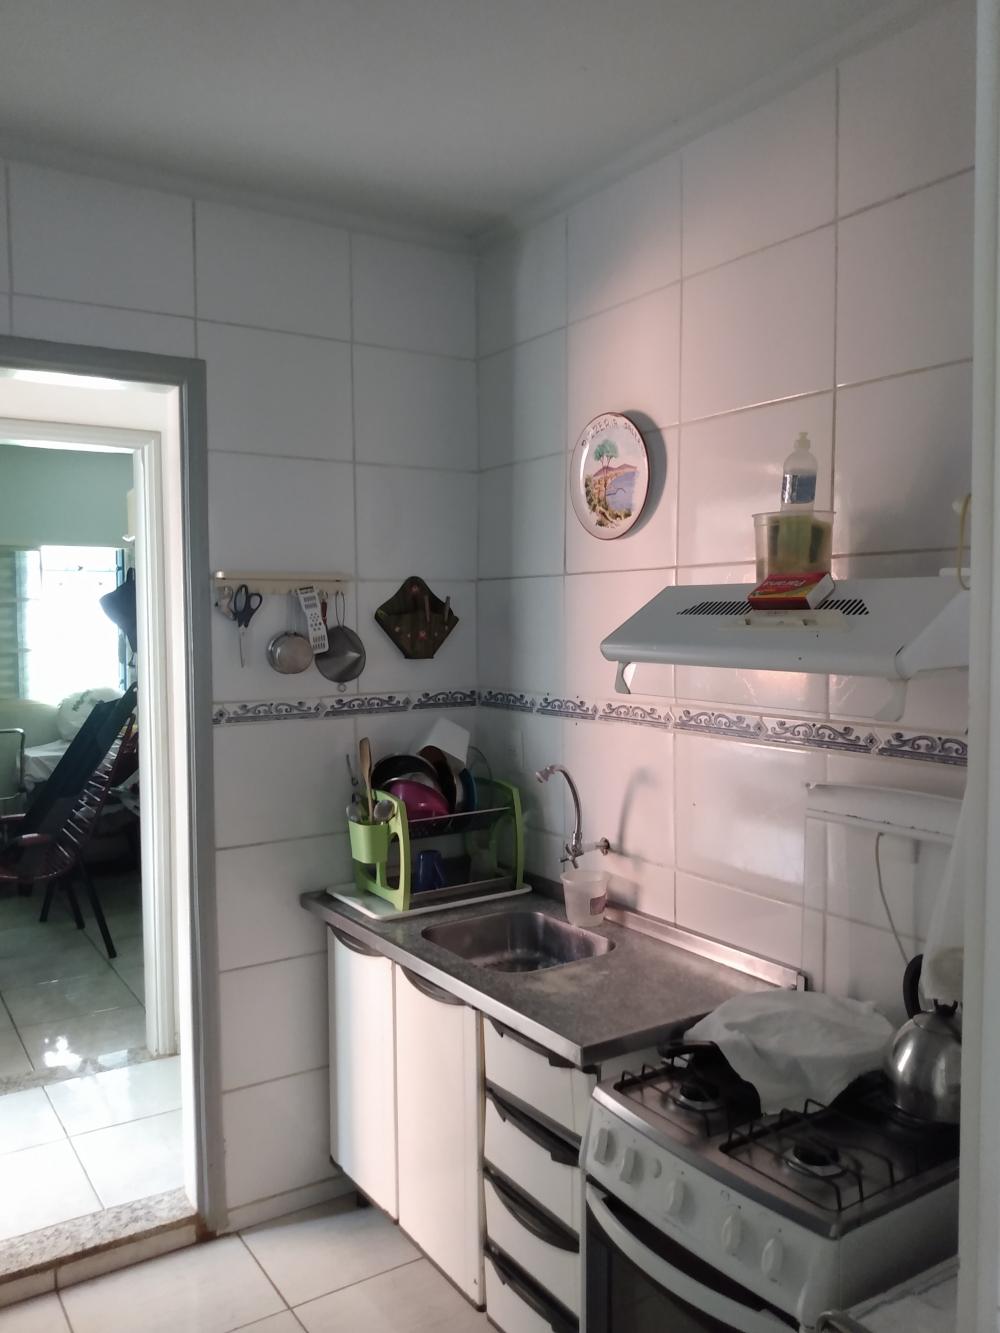 Alugar Casa / Padrão em São José do Rio Preto apenas R$ 850,00 - Foto 2